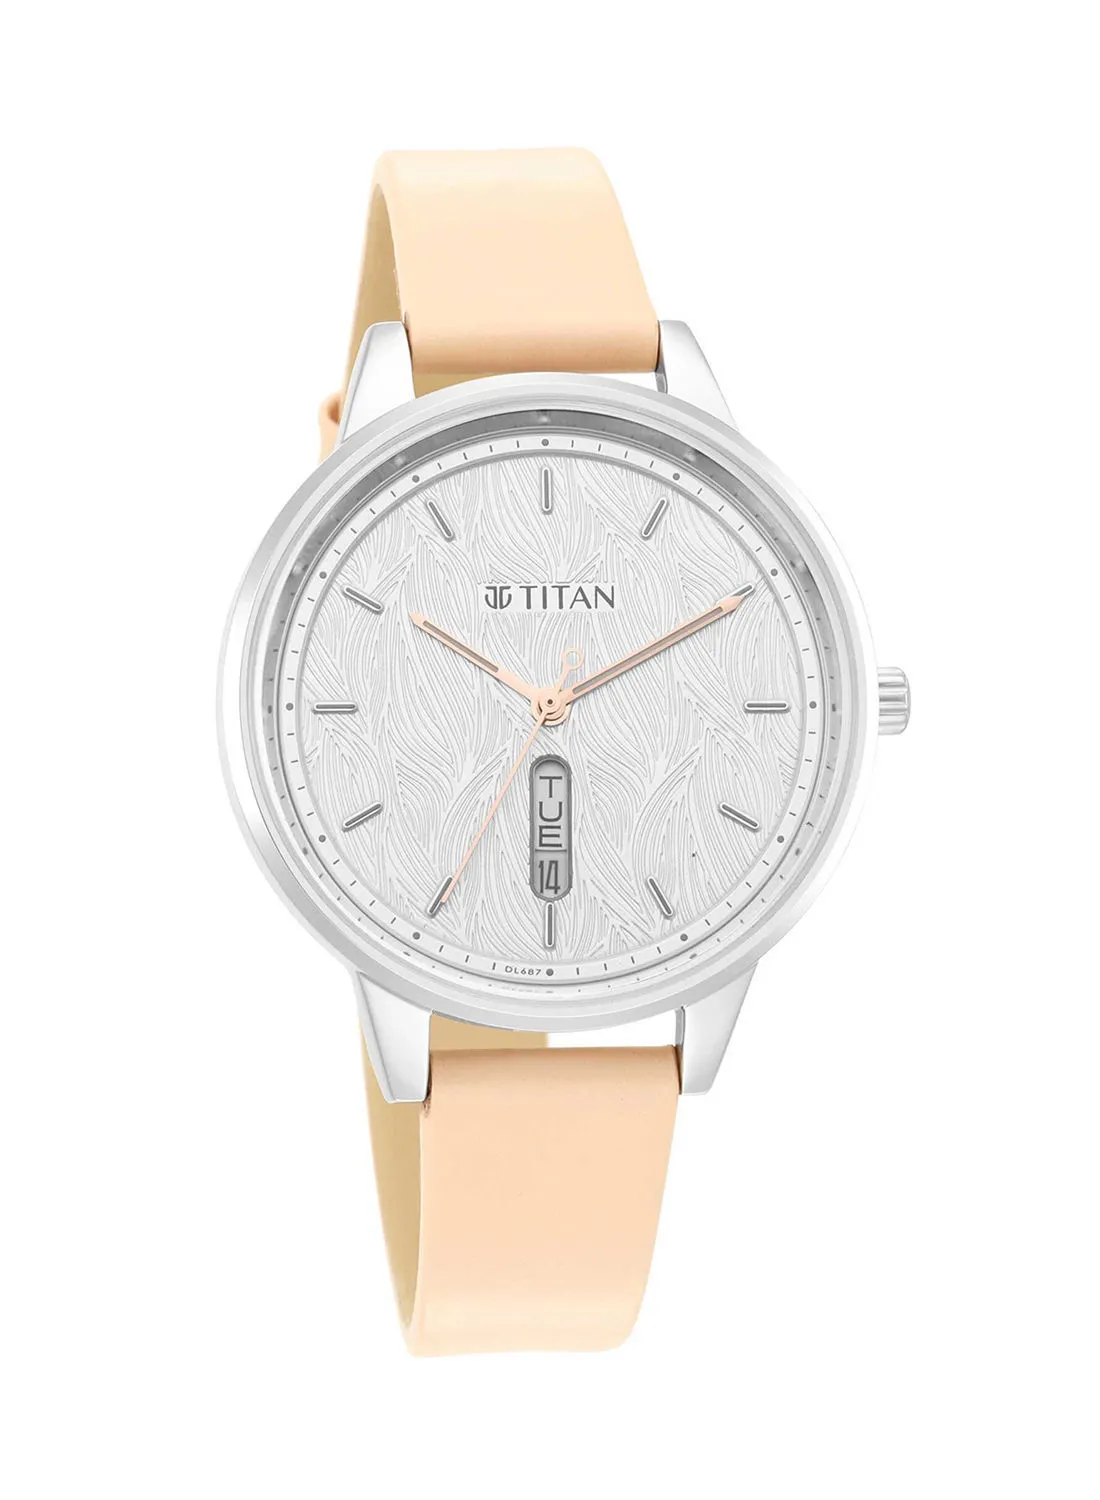 TITAN Leather Analog Wrist Watch 2648SL03